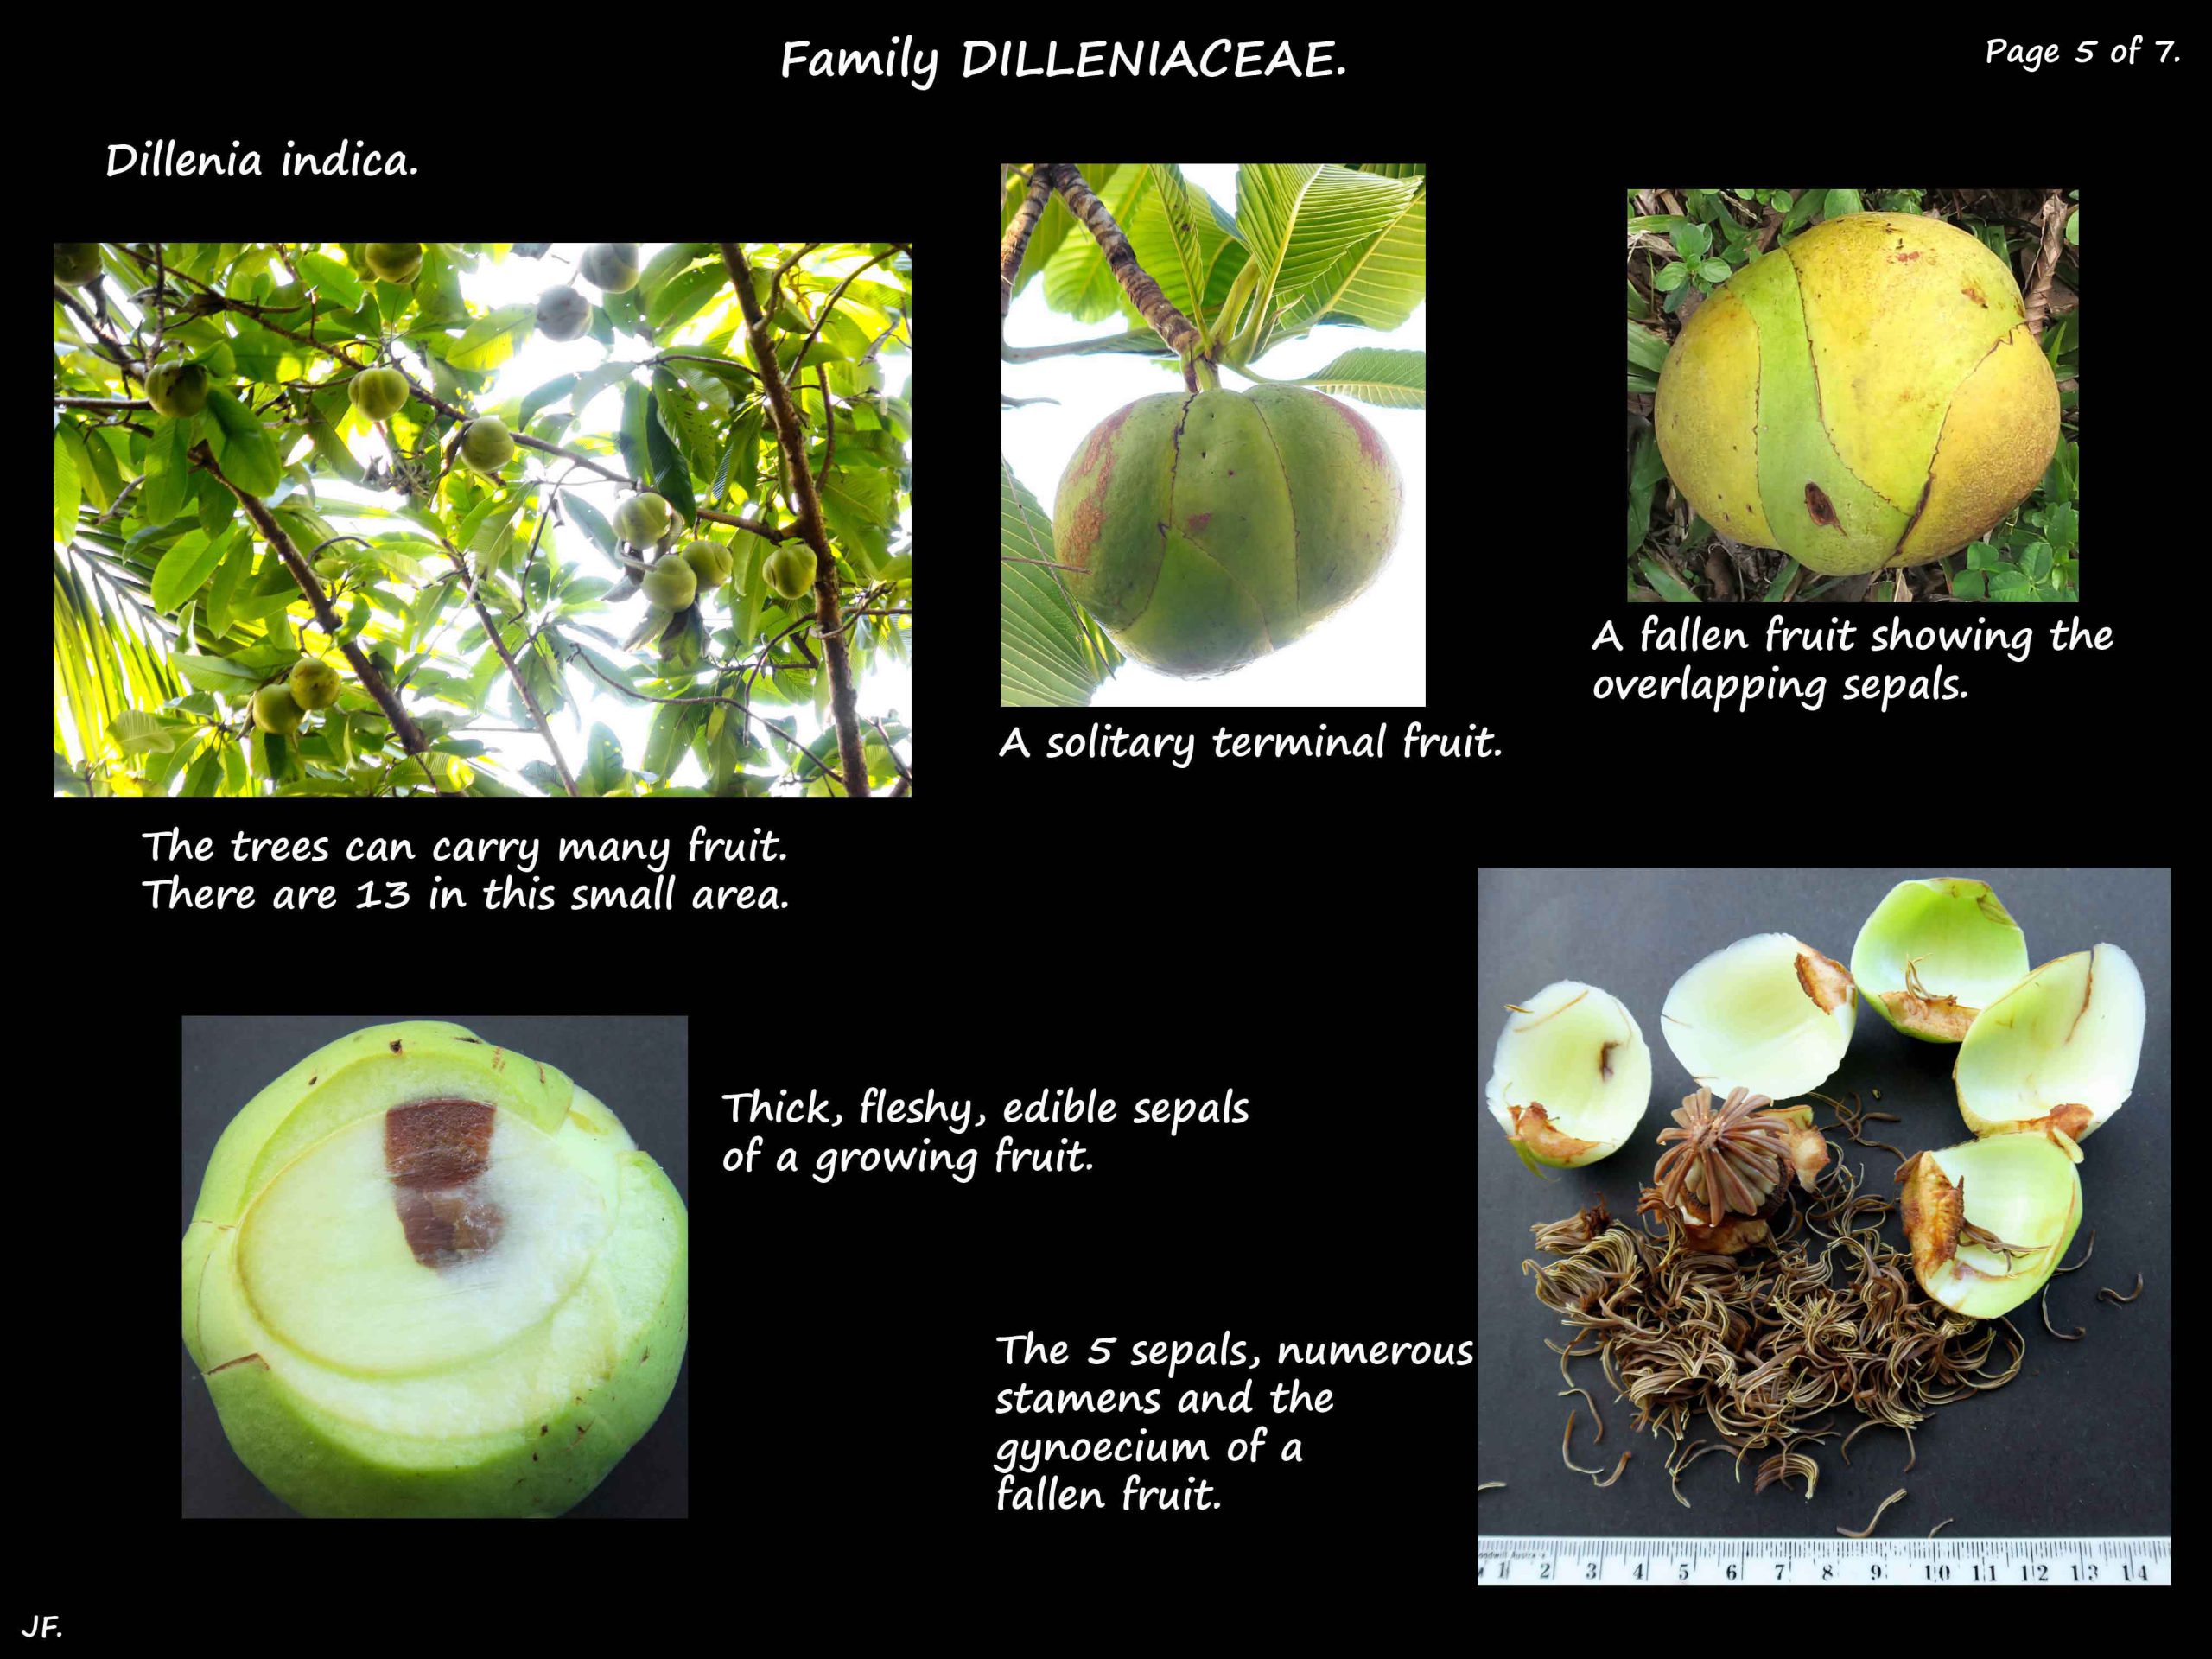 5 Dillenia indica fruit